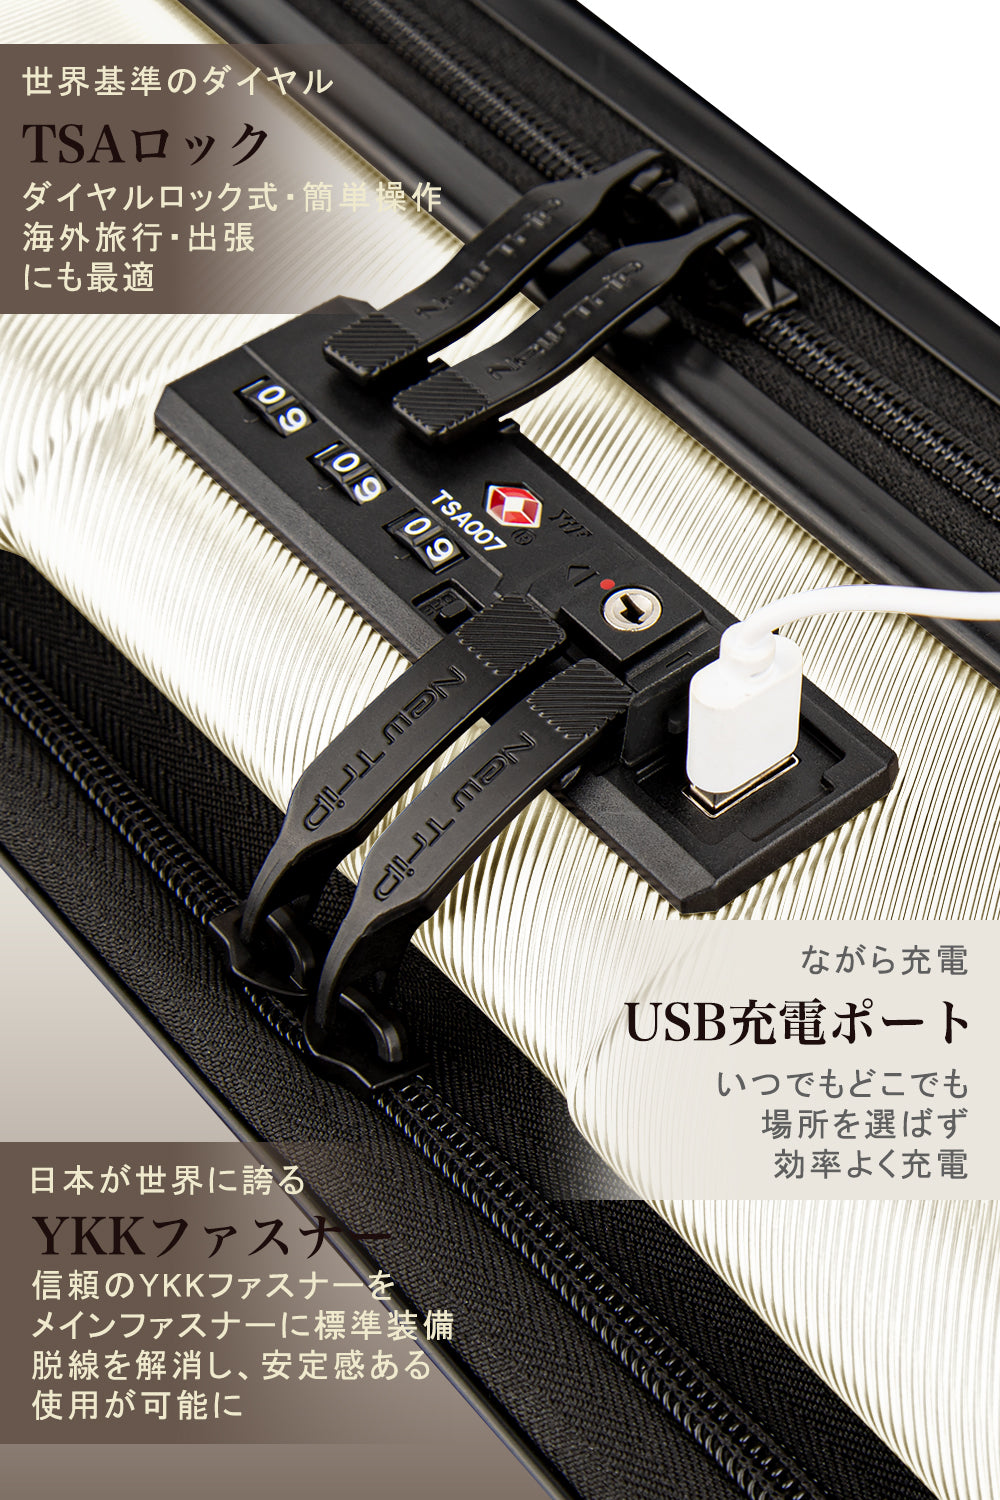 New Trip] スーツケース フロントオープン 機内持ち込み ストッパー